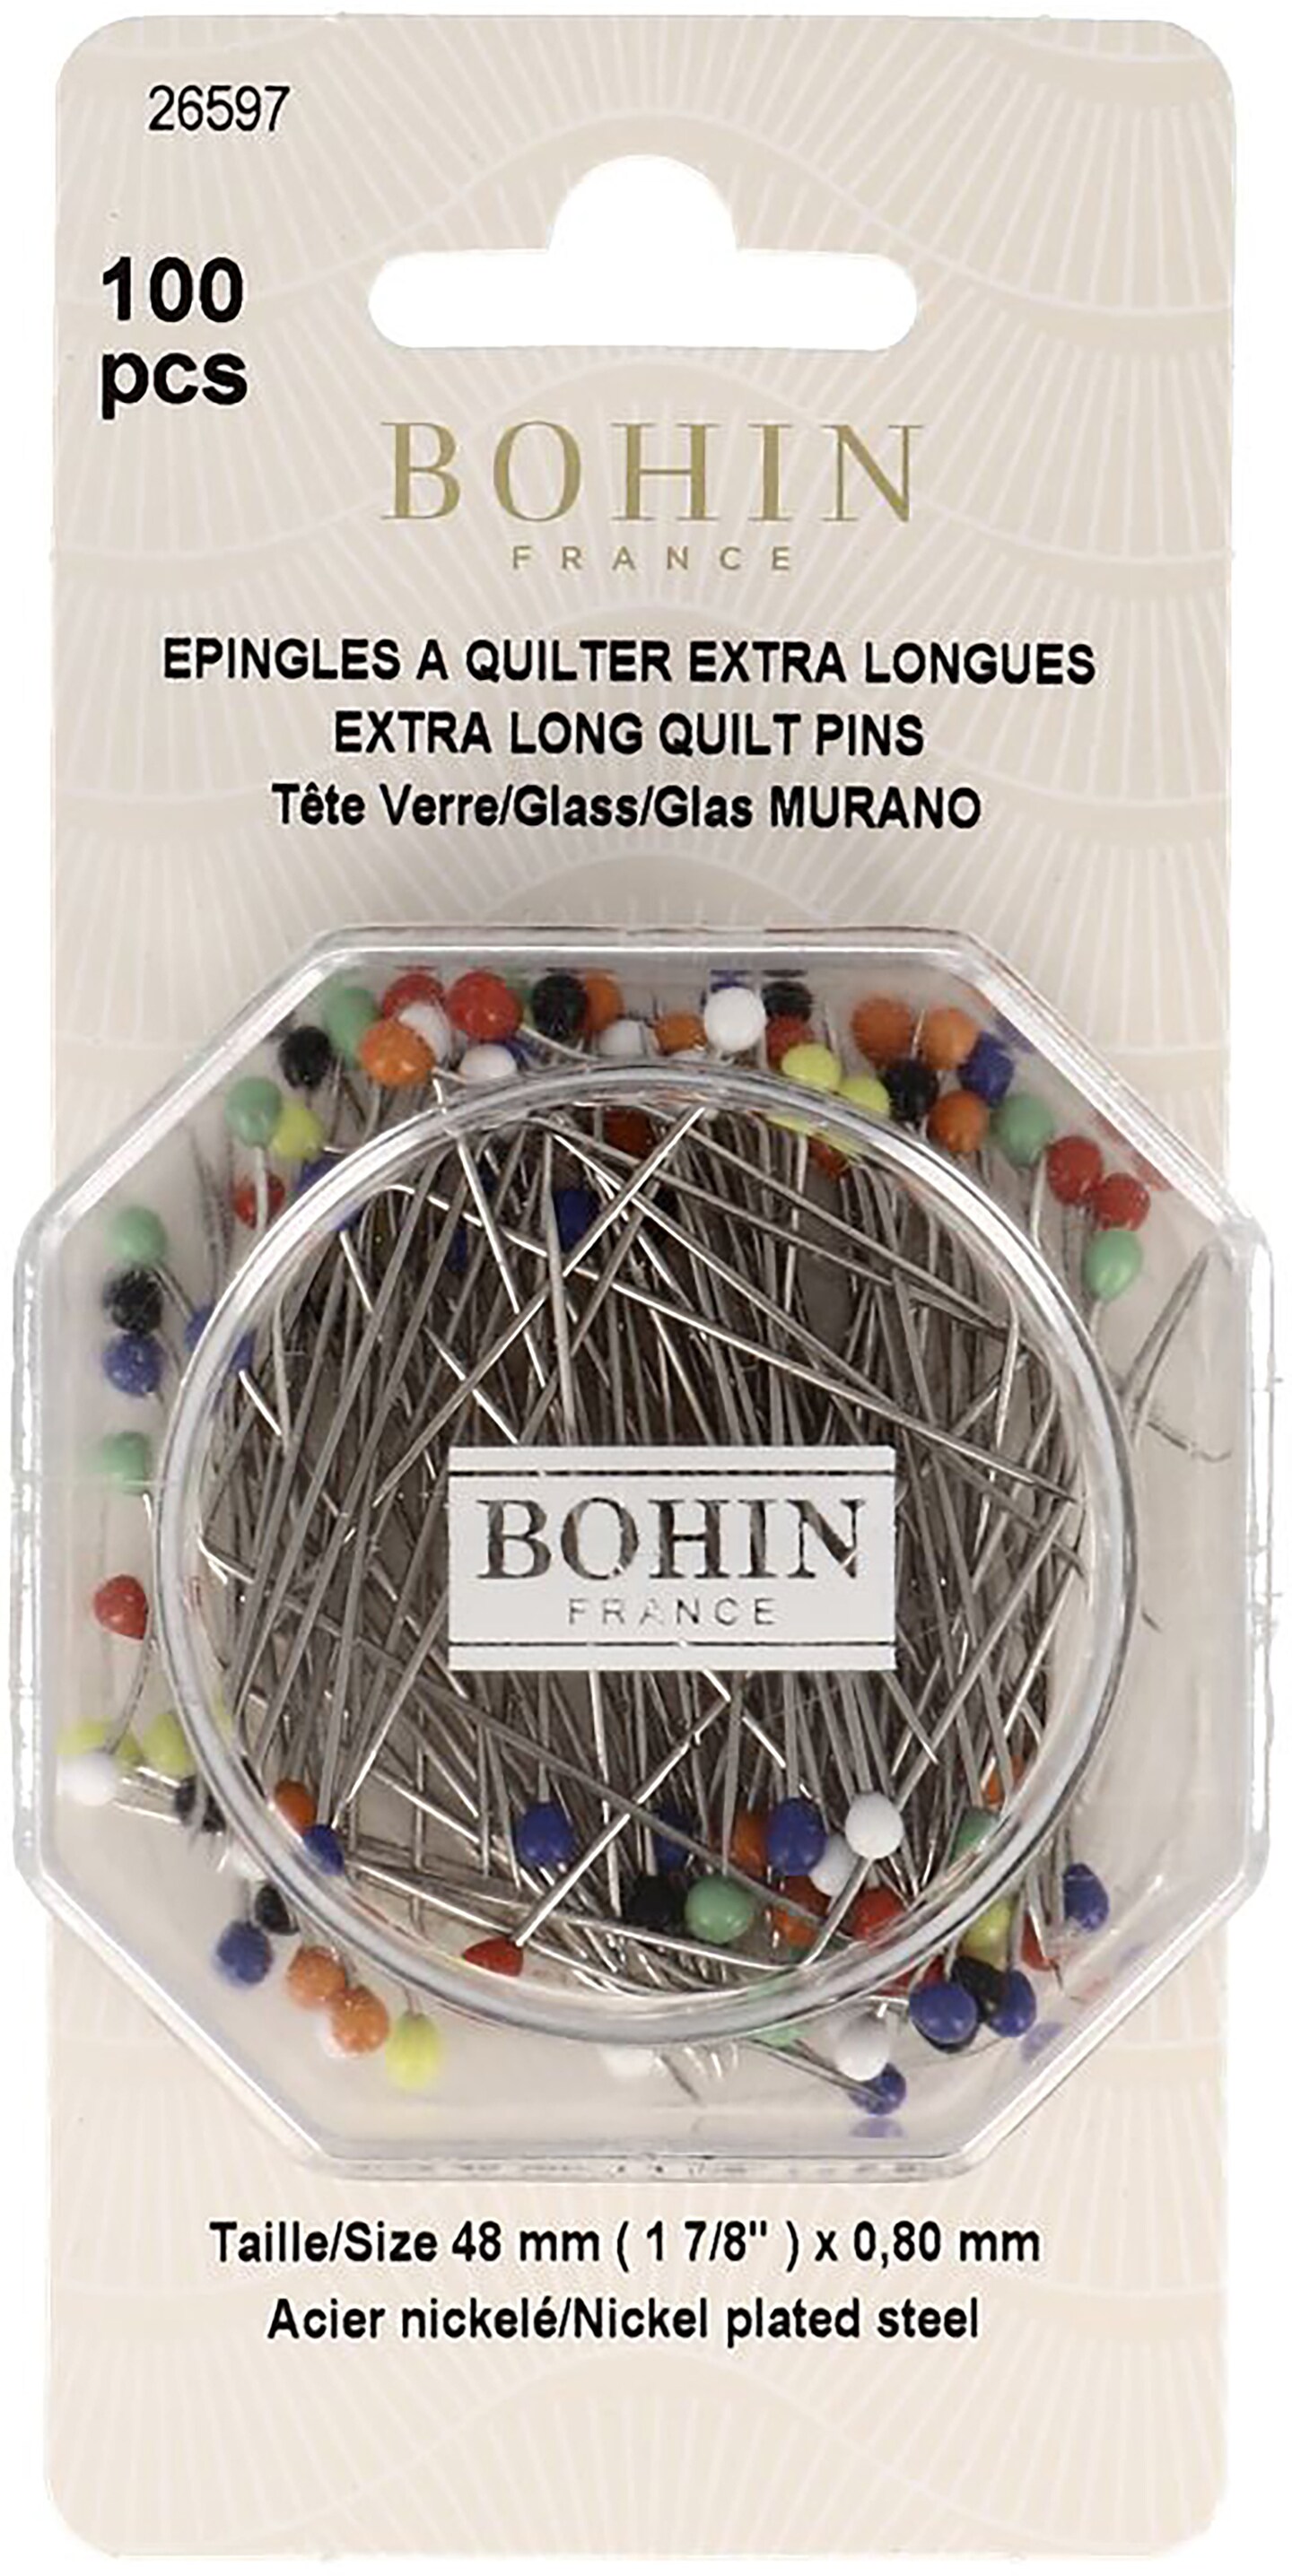 Bohin Glass Head Pins